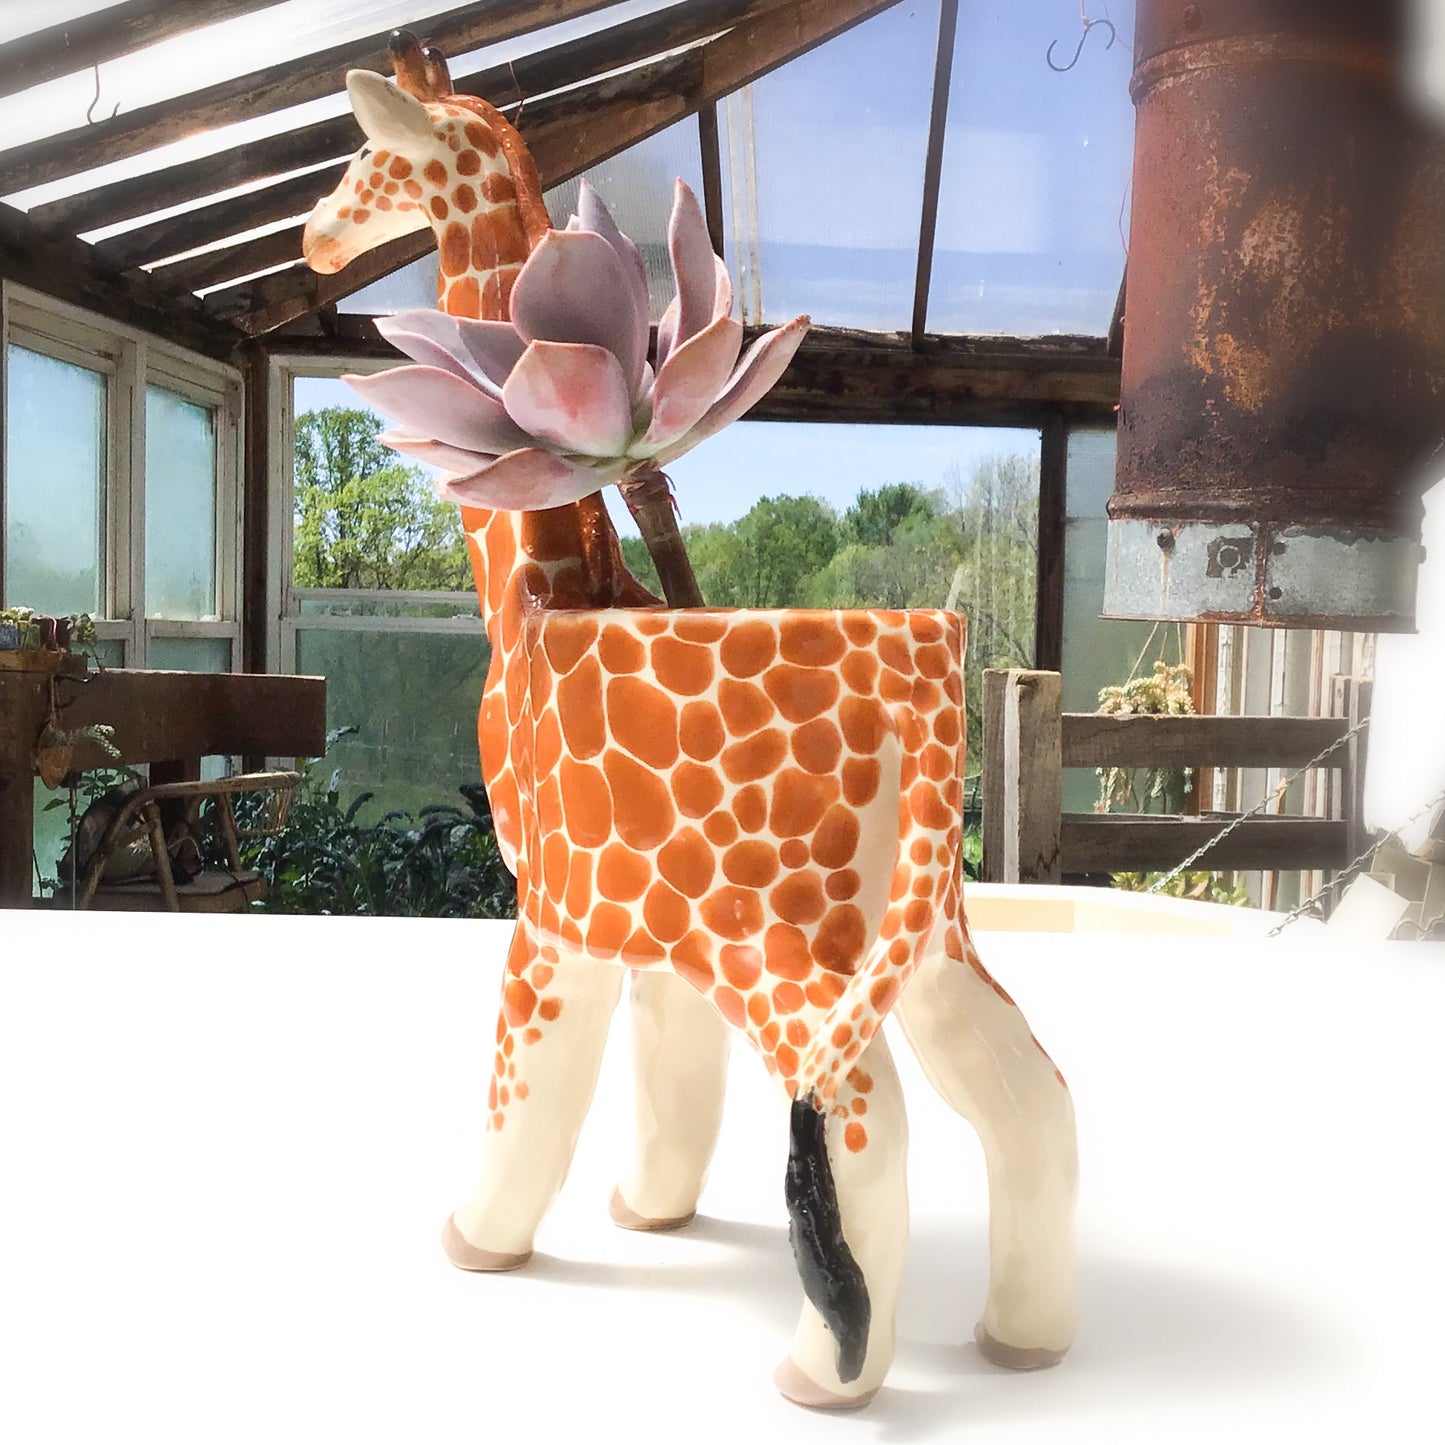 Giraffe Planter - Giraffe Succulent Pot